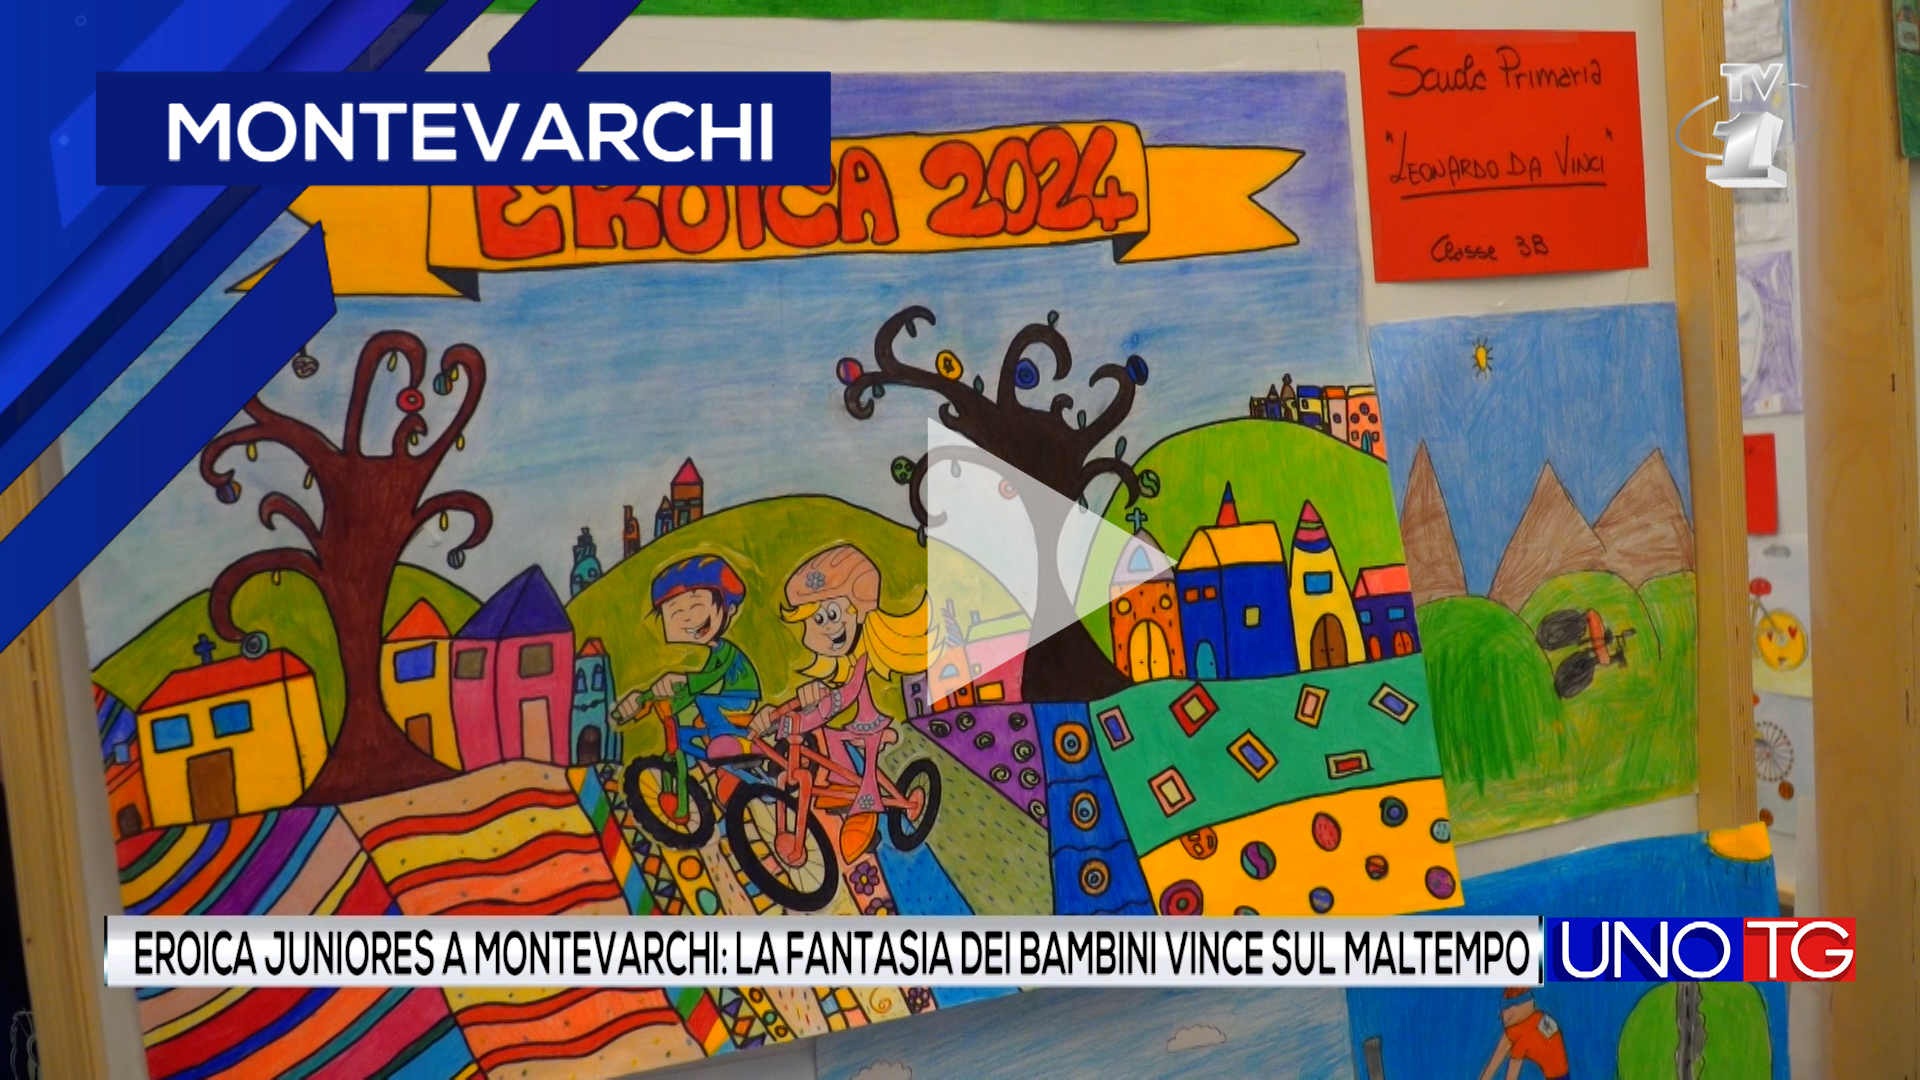 Eroica Juniores a Montevarchi: la fantasia dei bambini vince sul maltempo